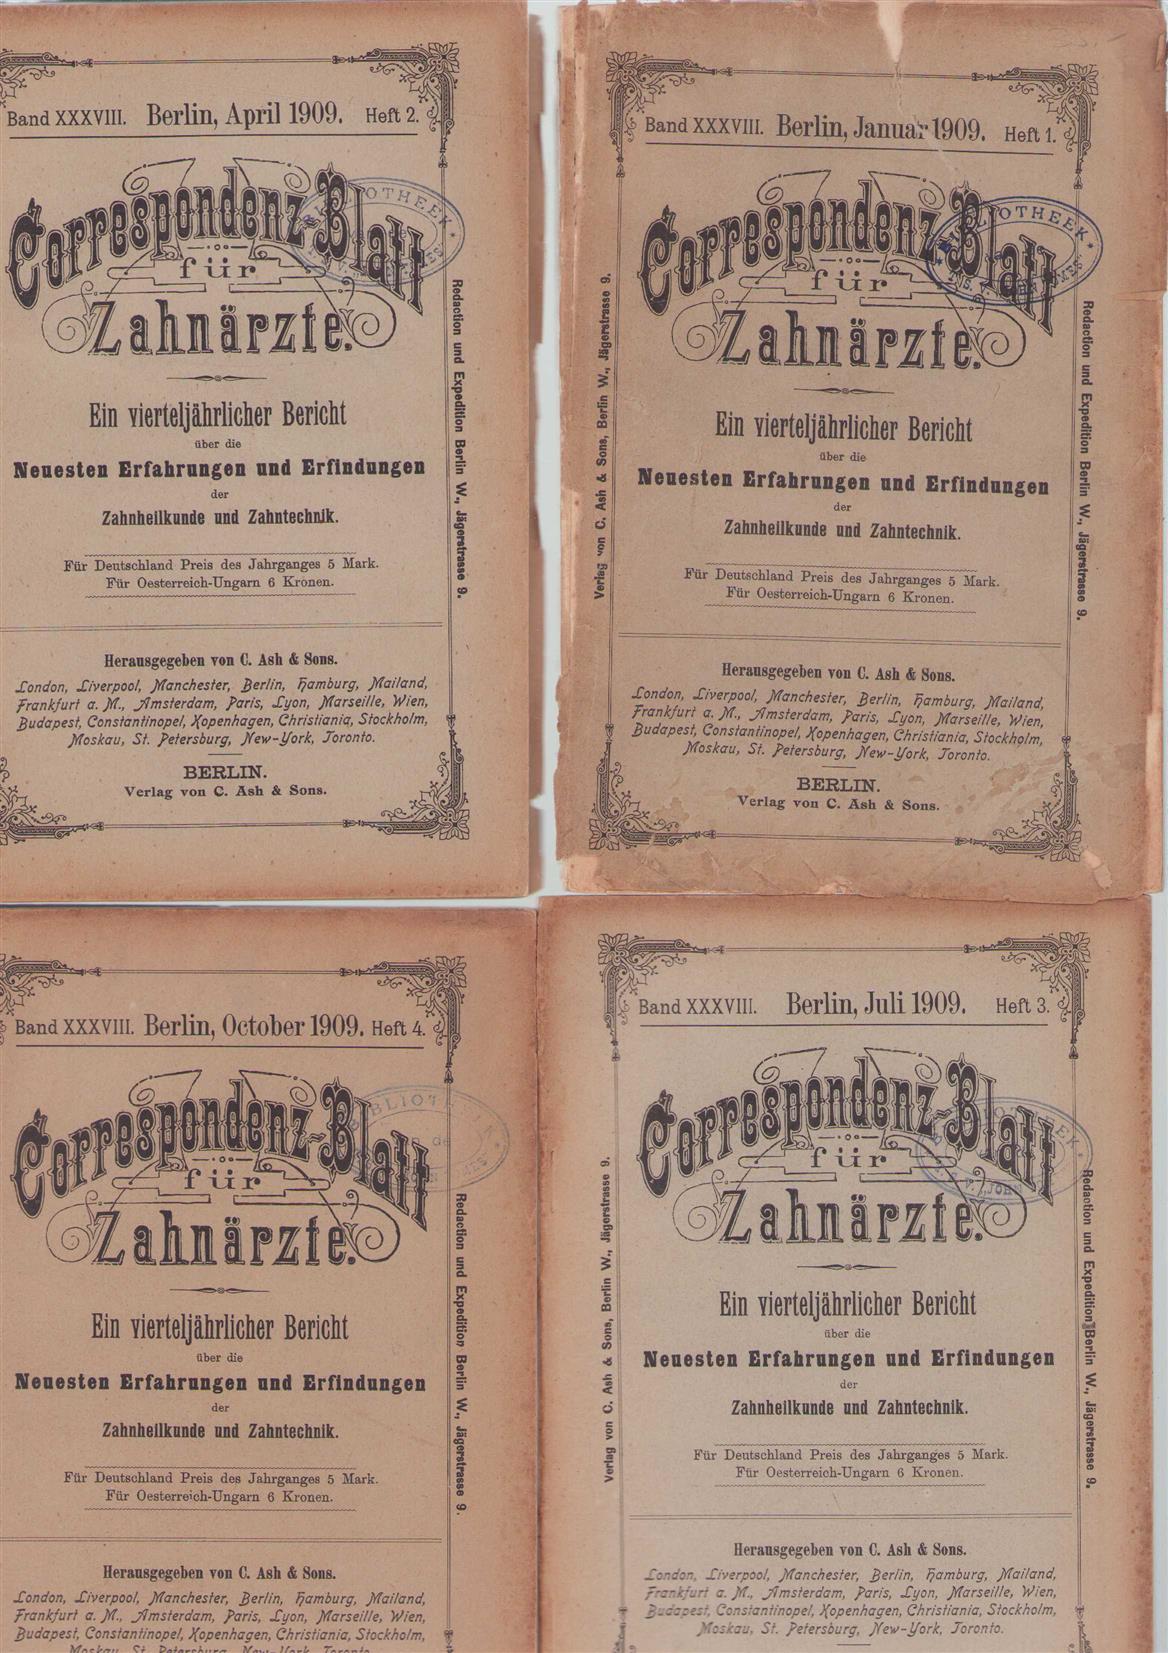 UNKNOWN AUTHOR - CORRESPONDENZ-BLATT FUR ZAHNARZTE, 1909,: ein vierteljahrlicher bericht uber die neuesten... erfahrungen und erfindungen der zahnheilkunde und.Zahntecnik